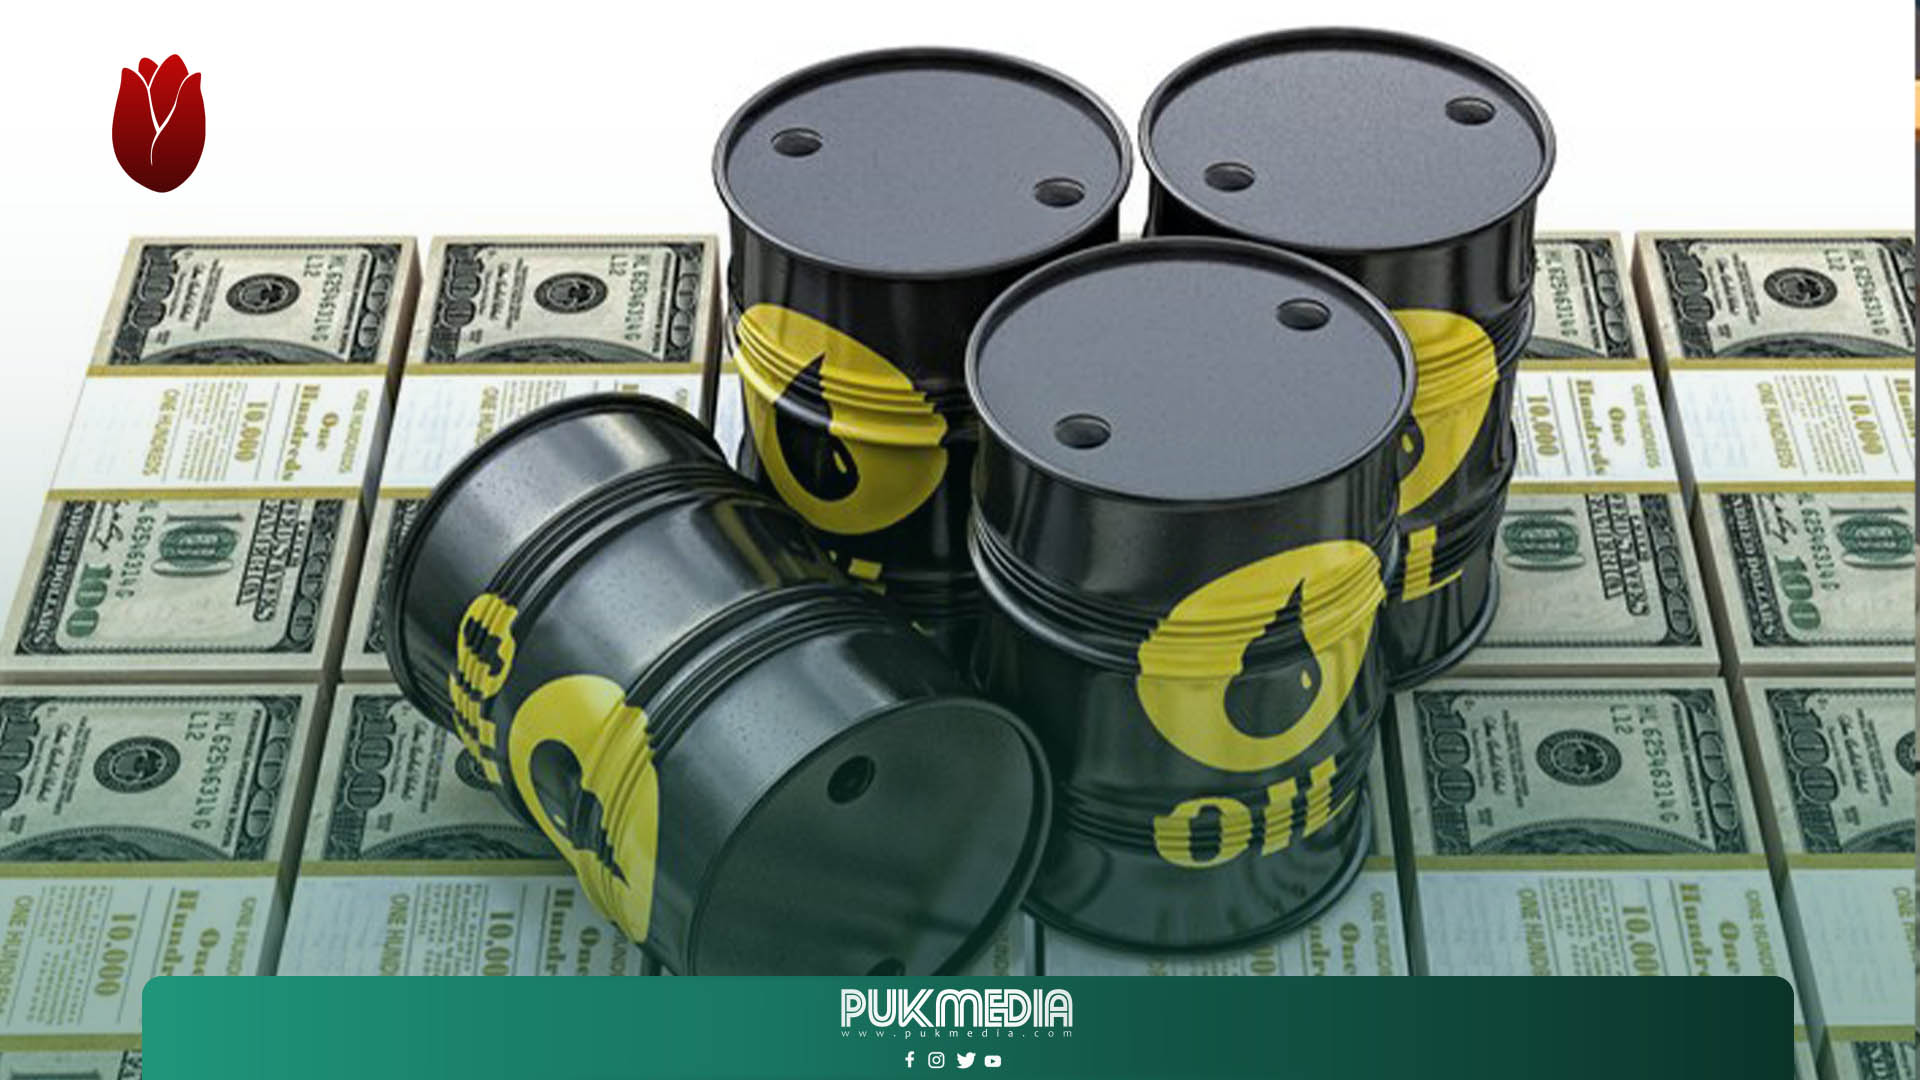 ارتفاع أسعار النفط